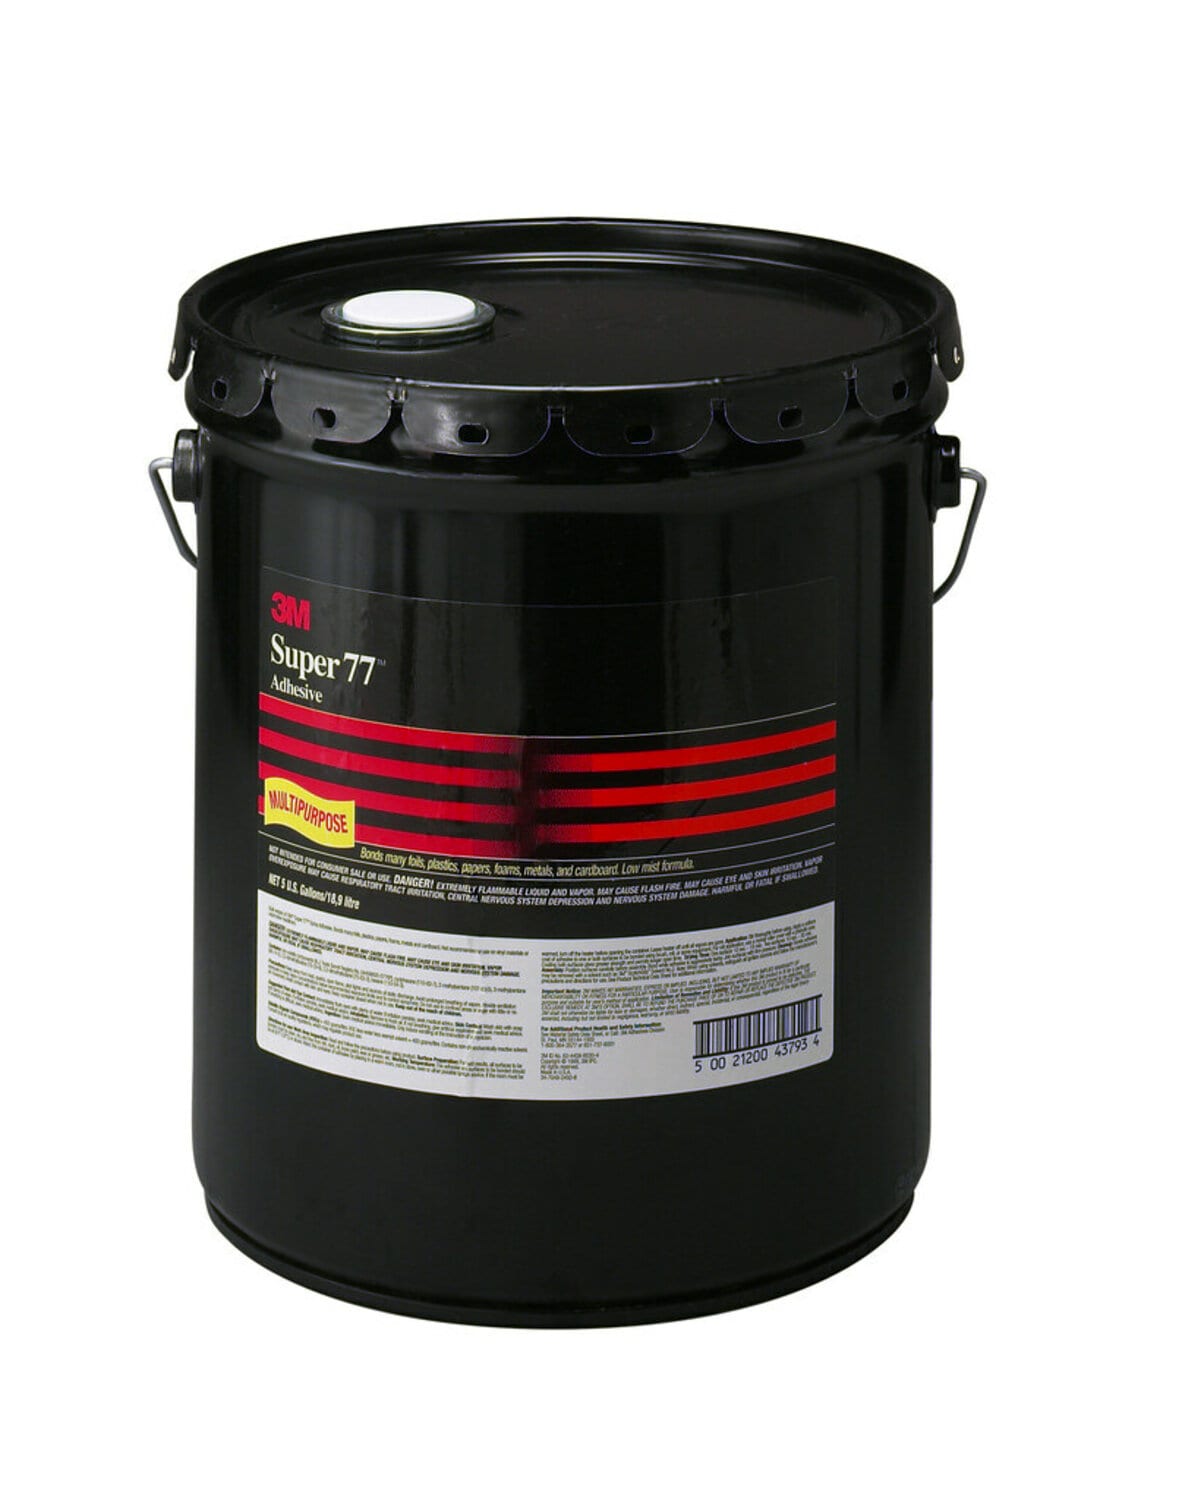 7100160478 - 3M Super 77 Multipurpose Spray Adhesive, Red, 55 Gallon Drum (53
Gallon Net), 1/Drum